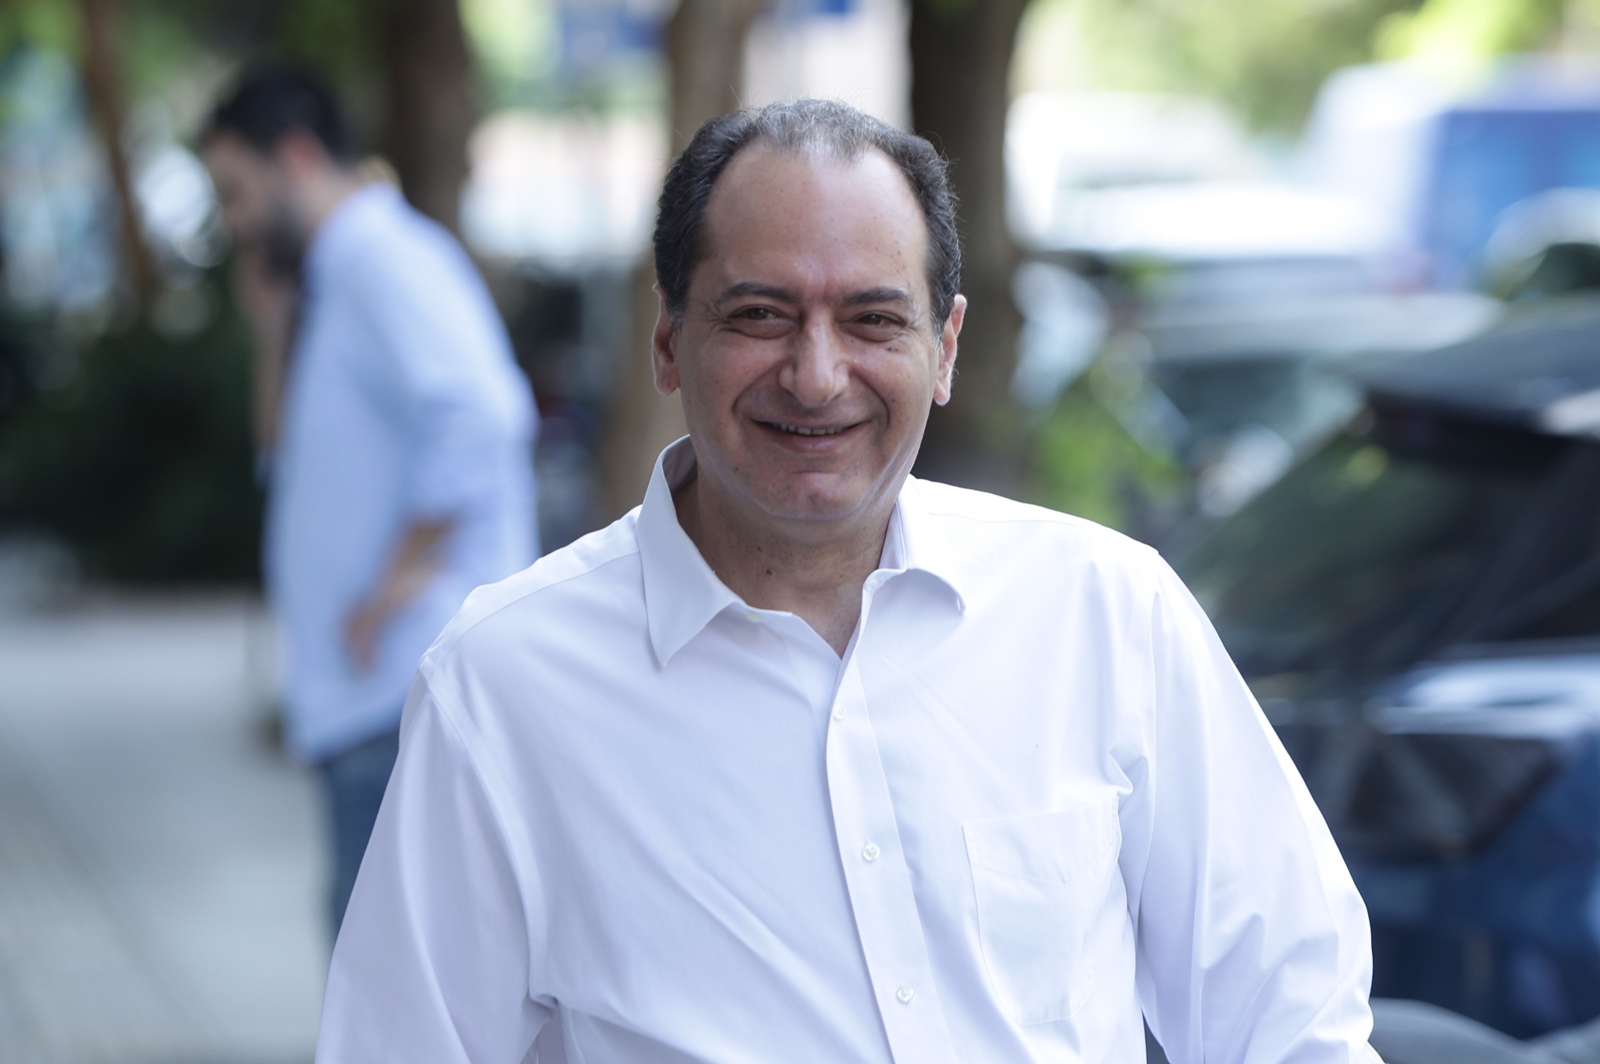 ΣΥΡΙΖΑ – ΠΑΣΟΚ συνεργασία: «Είναι κάτι που θα γίνει πράξη πολύ σύντομα», λέει ο Σπίρτζης